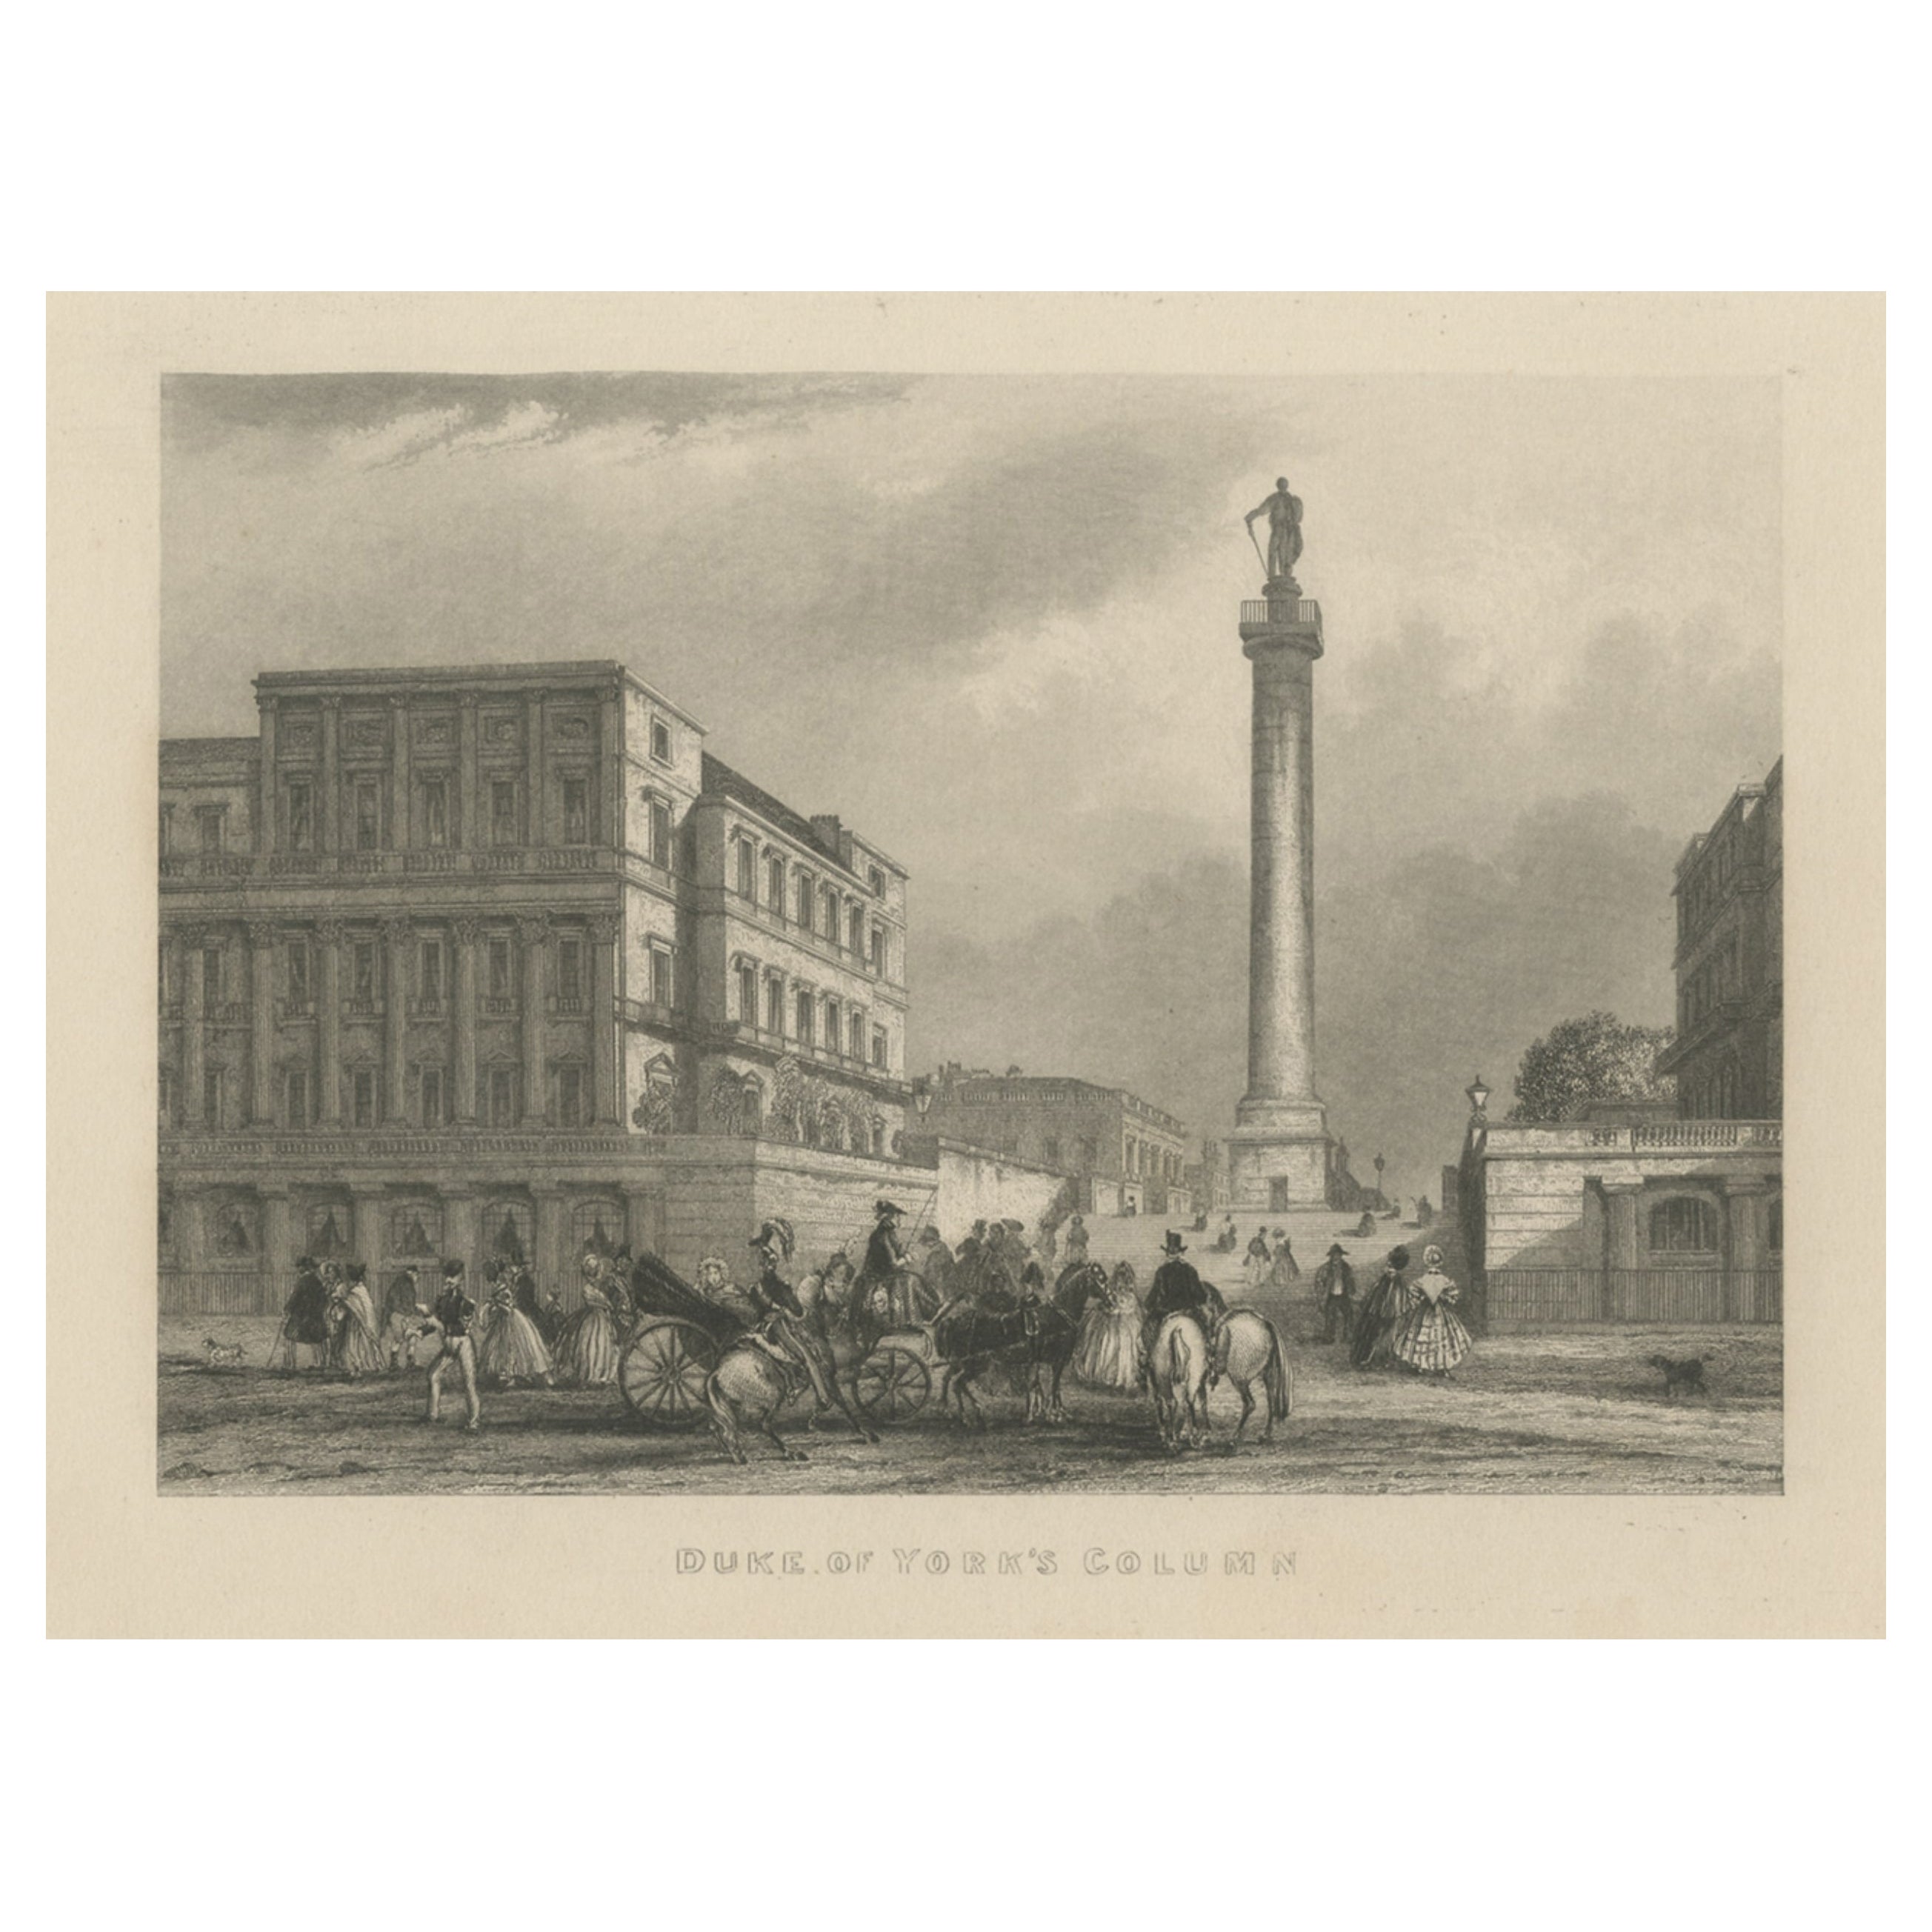 View d'origine en acier gravé de la colonne du duc d'York à Londres, Angleterre, 1840